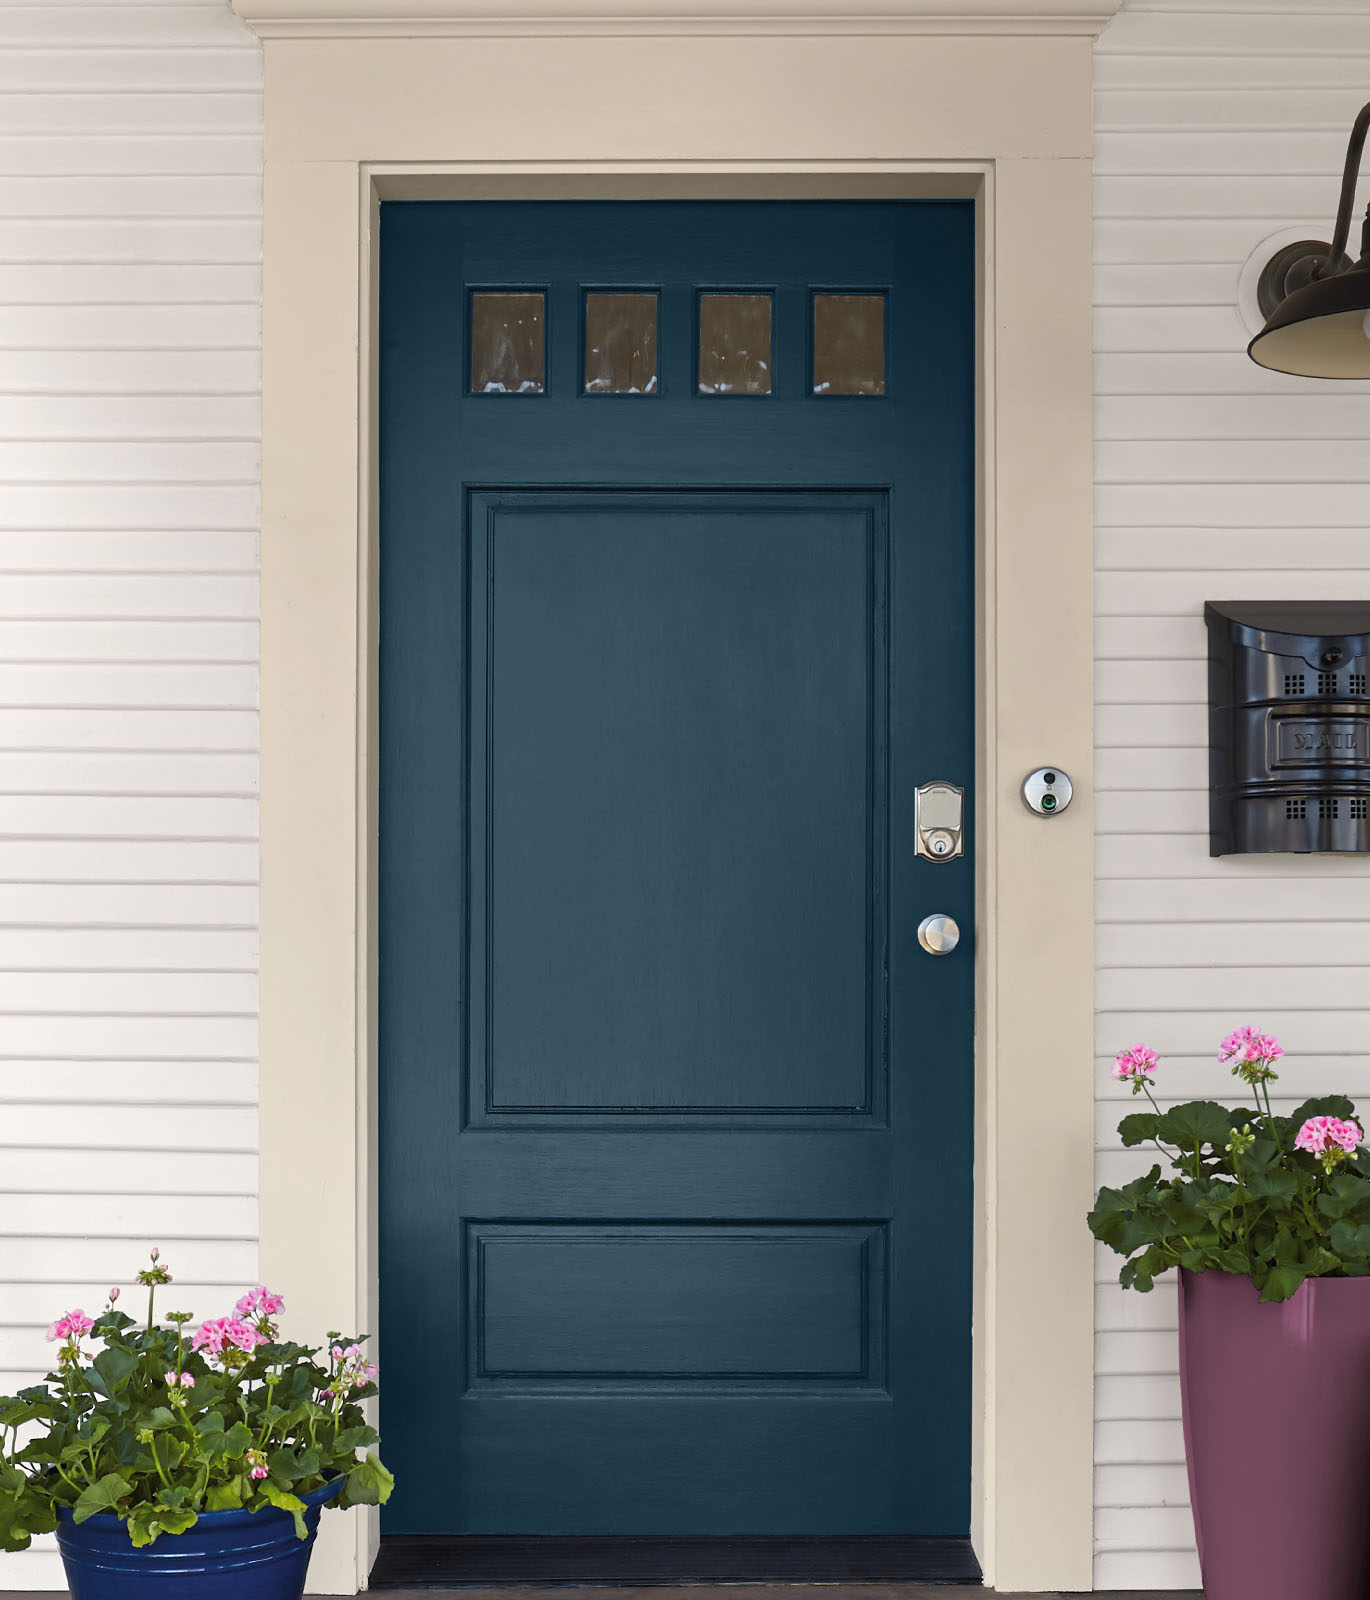 An exterior front door painted in blue.